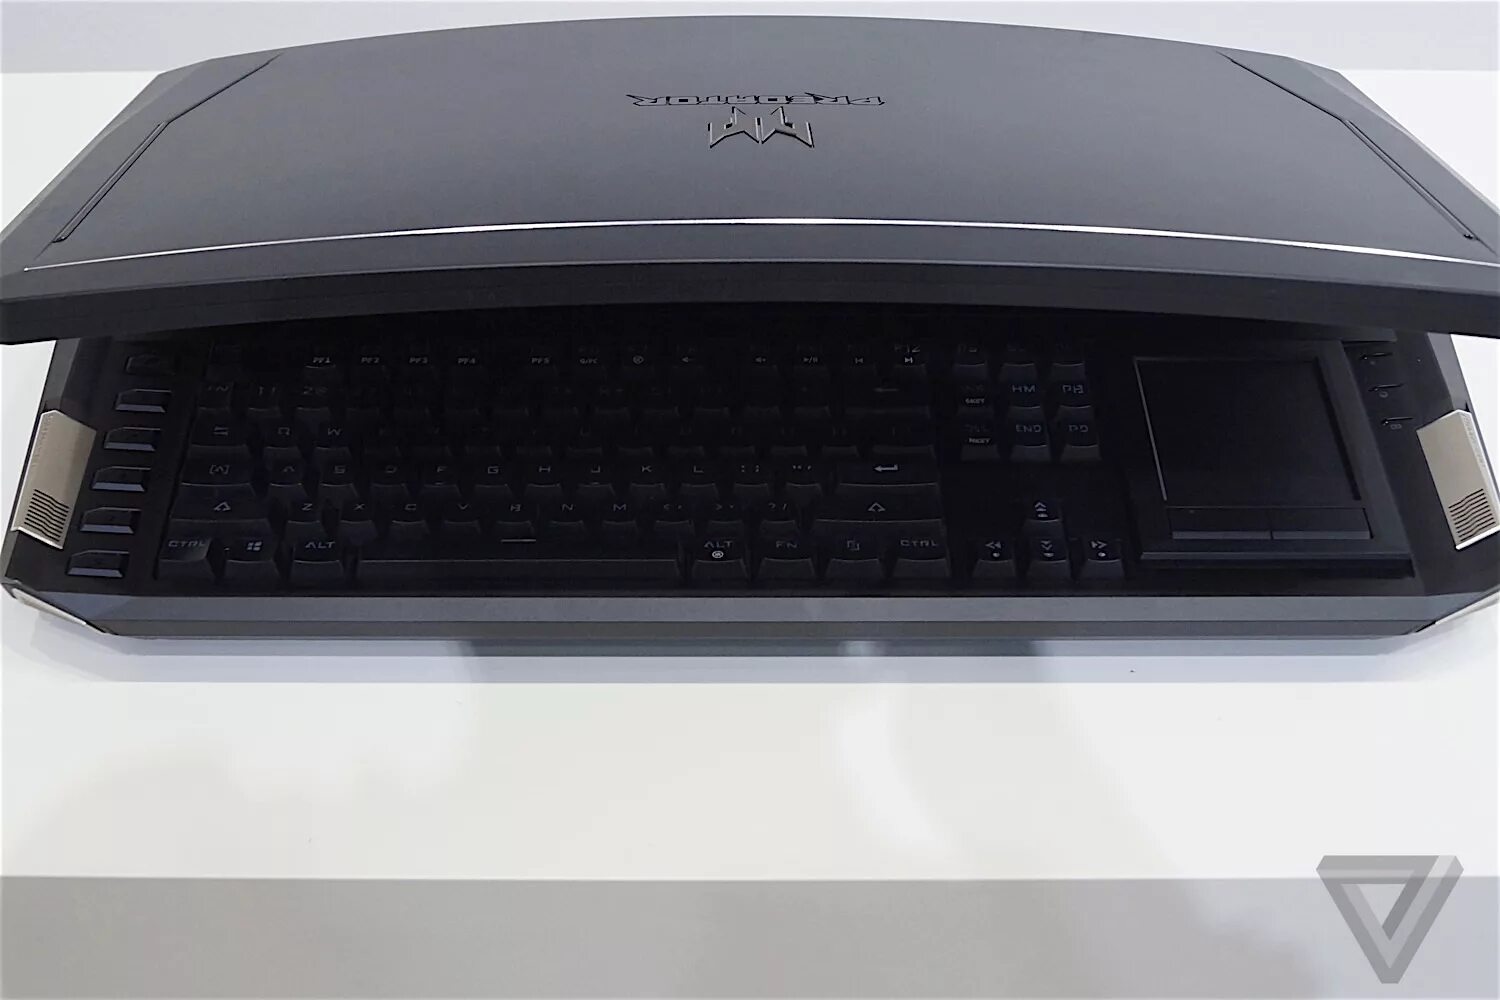 X 21 s. Ноутбук ASUS Predator 21x. Acer Predator 21x. Acer Predator с механической клавиатурой и изогнутым монитором. Acer smile.